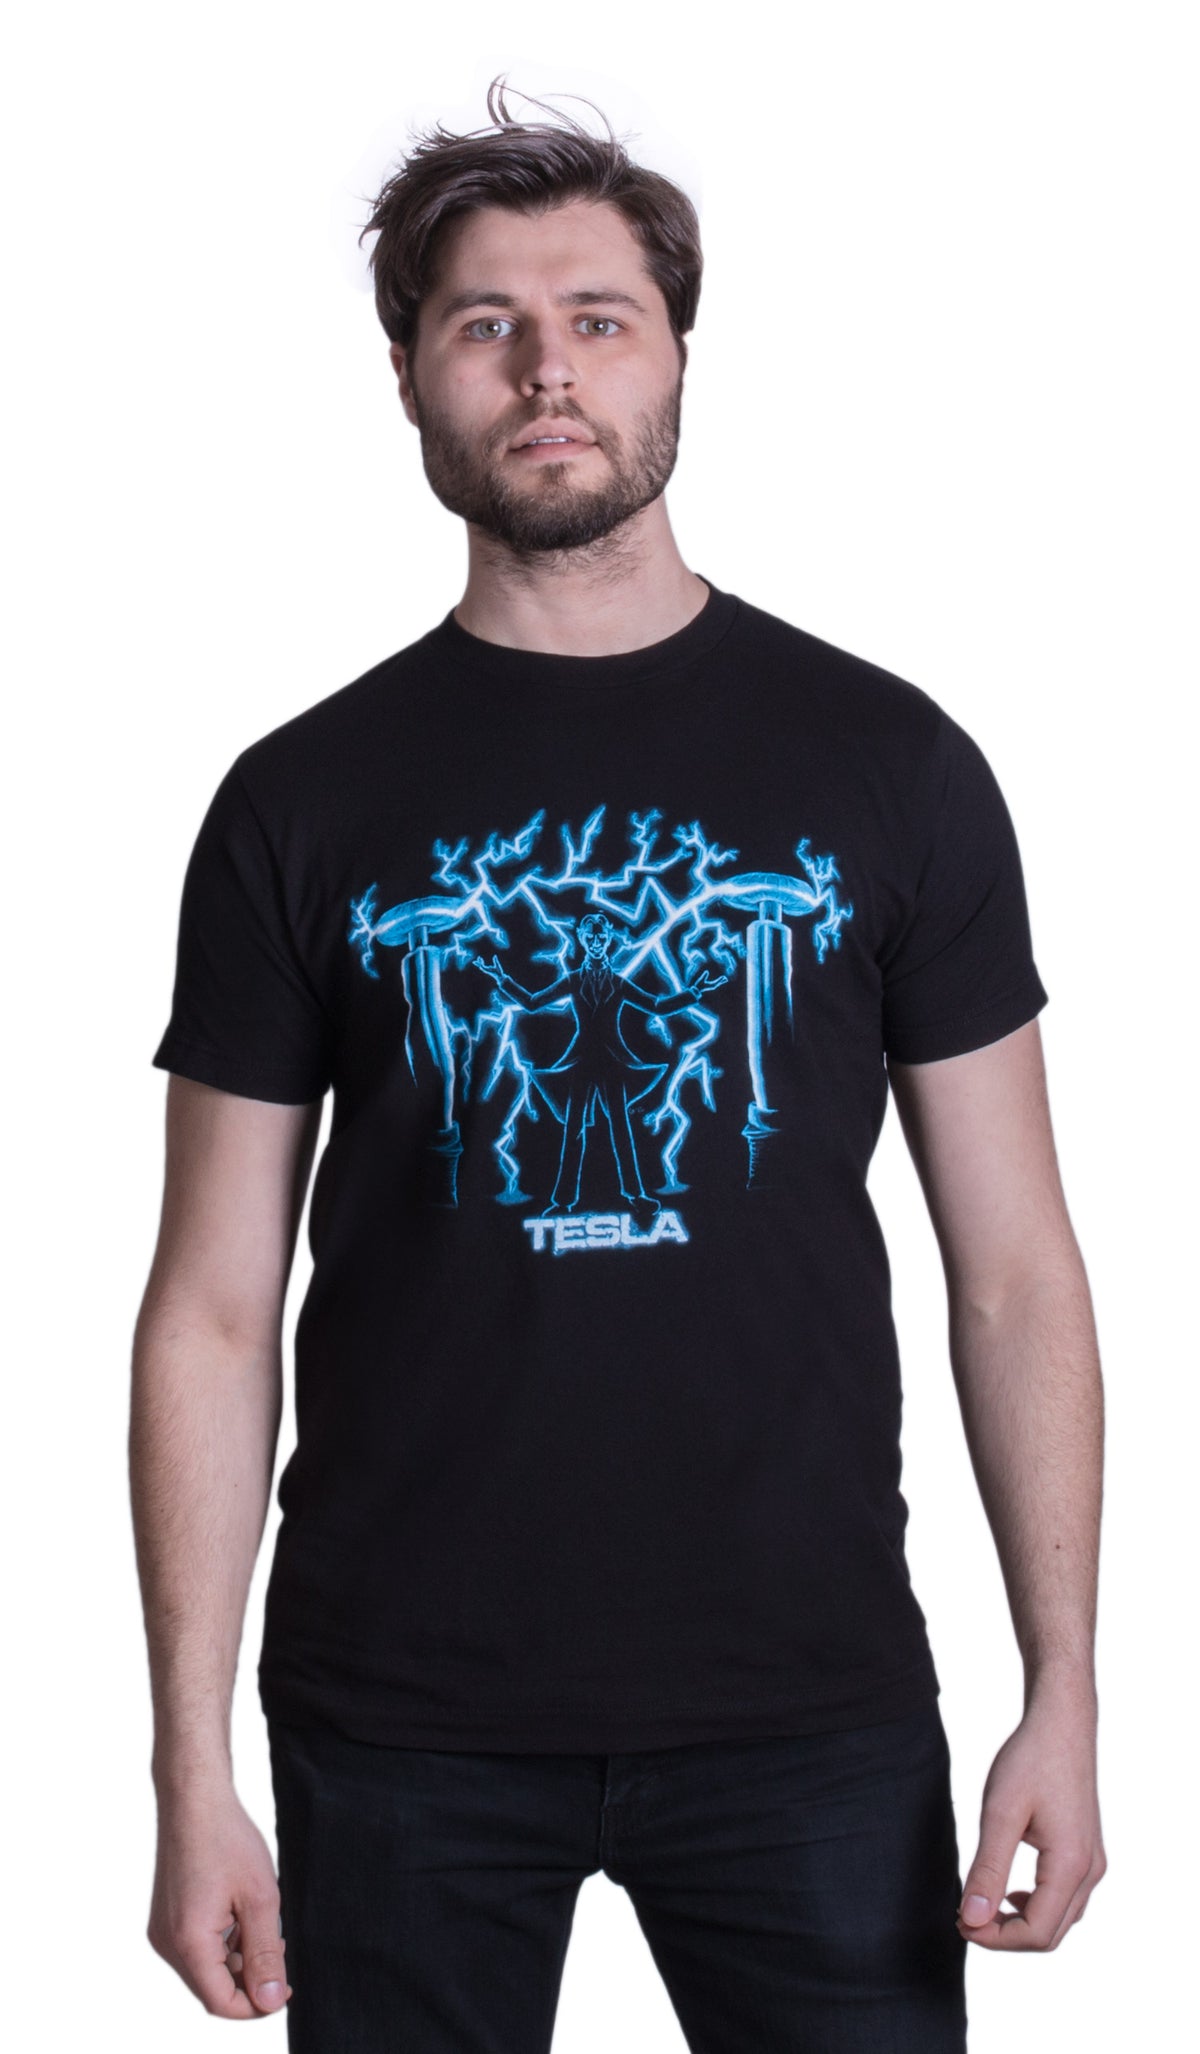 Nikola Tesla, Mad Scientist | Unisex Science Engineering Geek Humor T-shirt